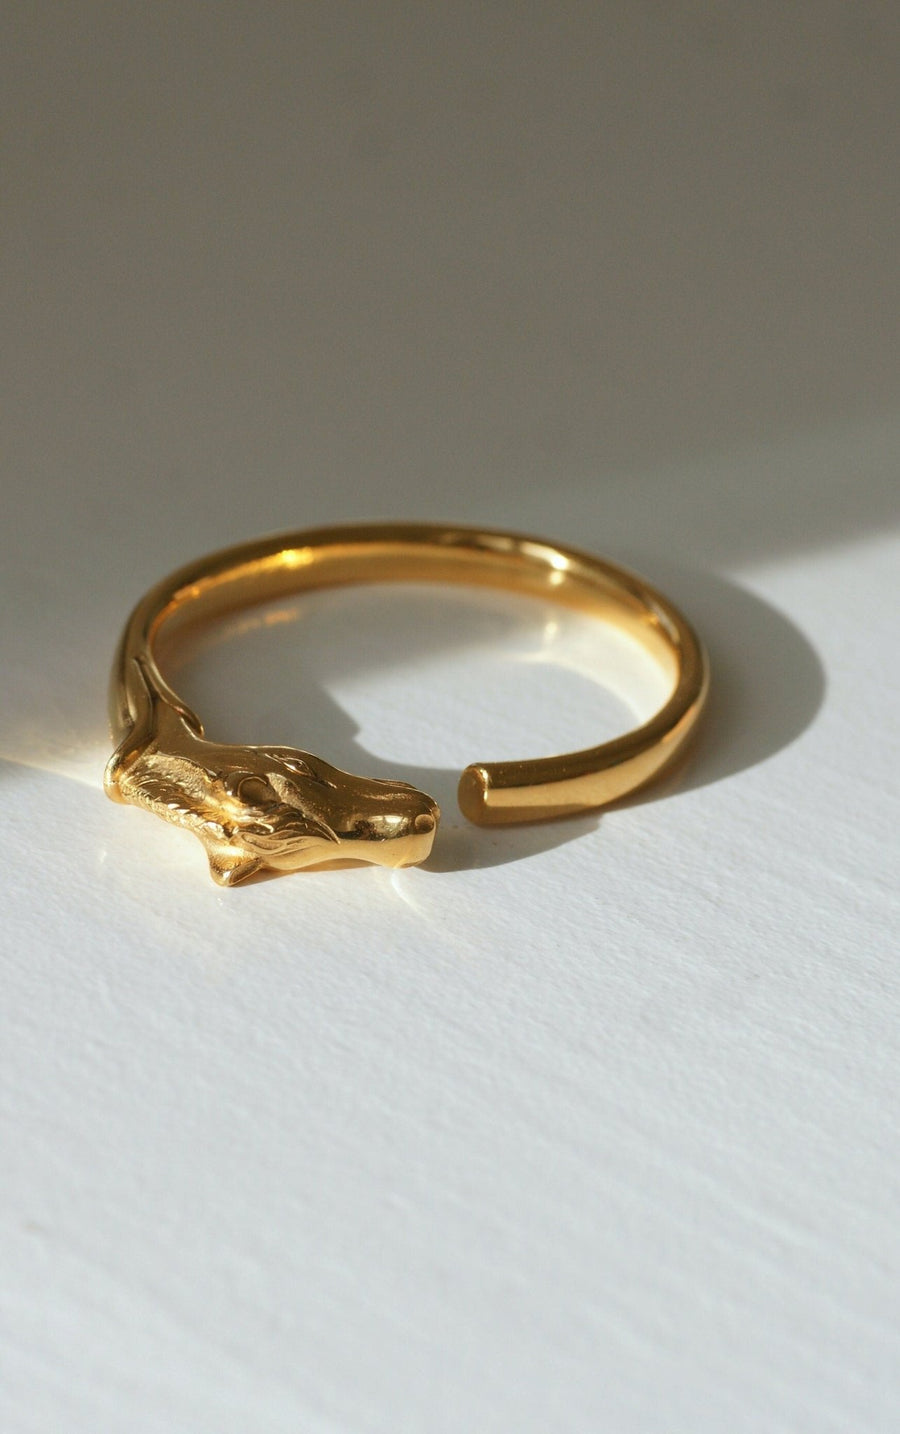 Golden Hermes horse head bracelet - Penelope Gallery